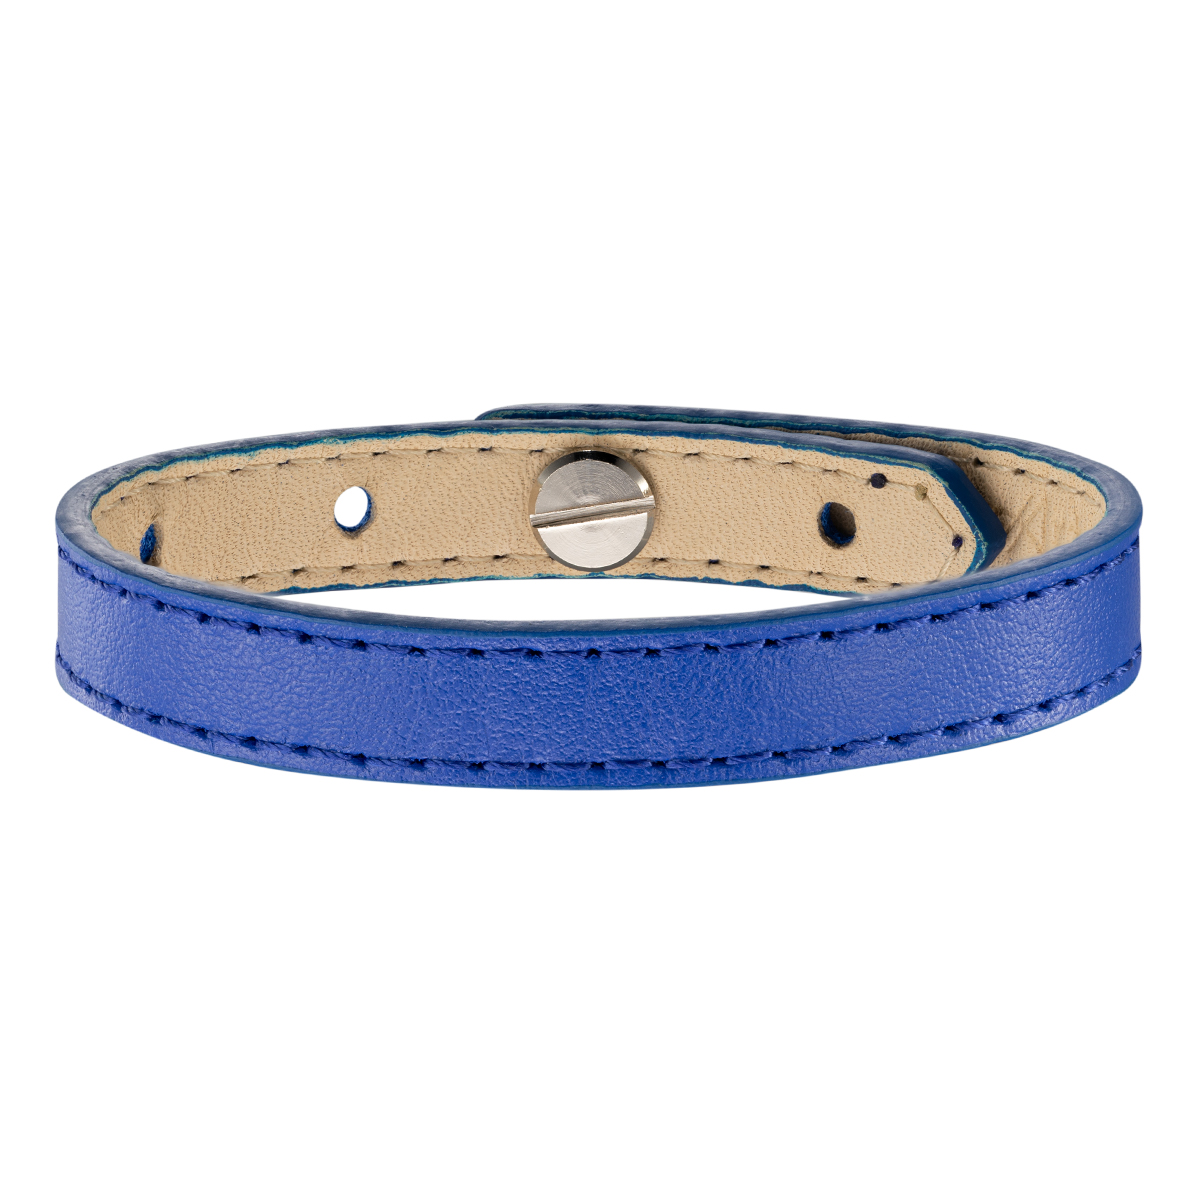 Ярко-синий кожаный браслет.Ширина 10 мм